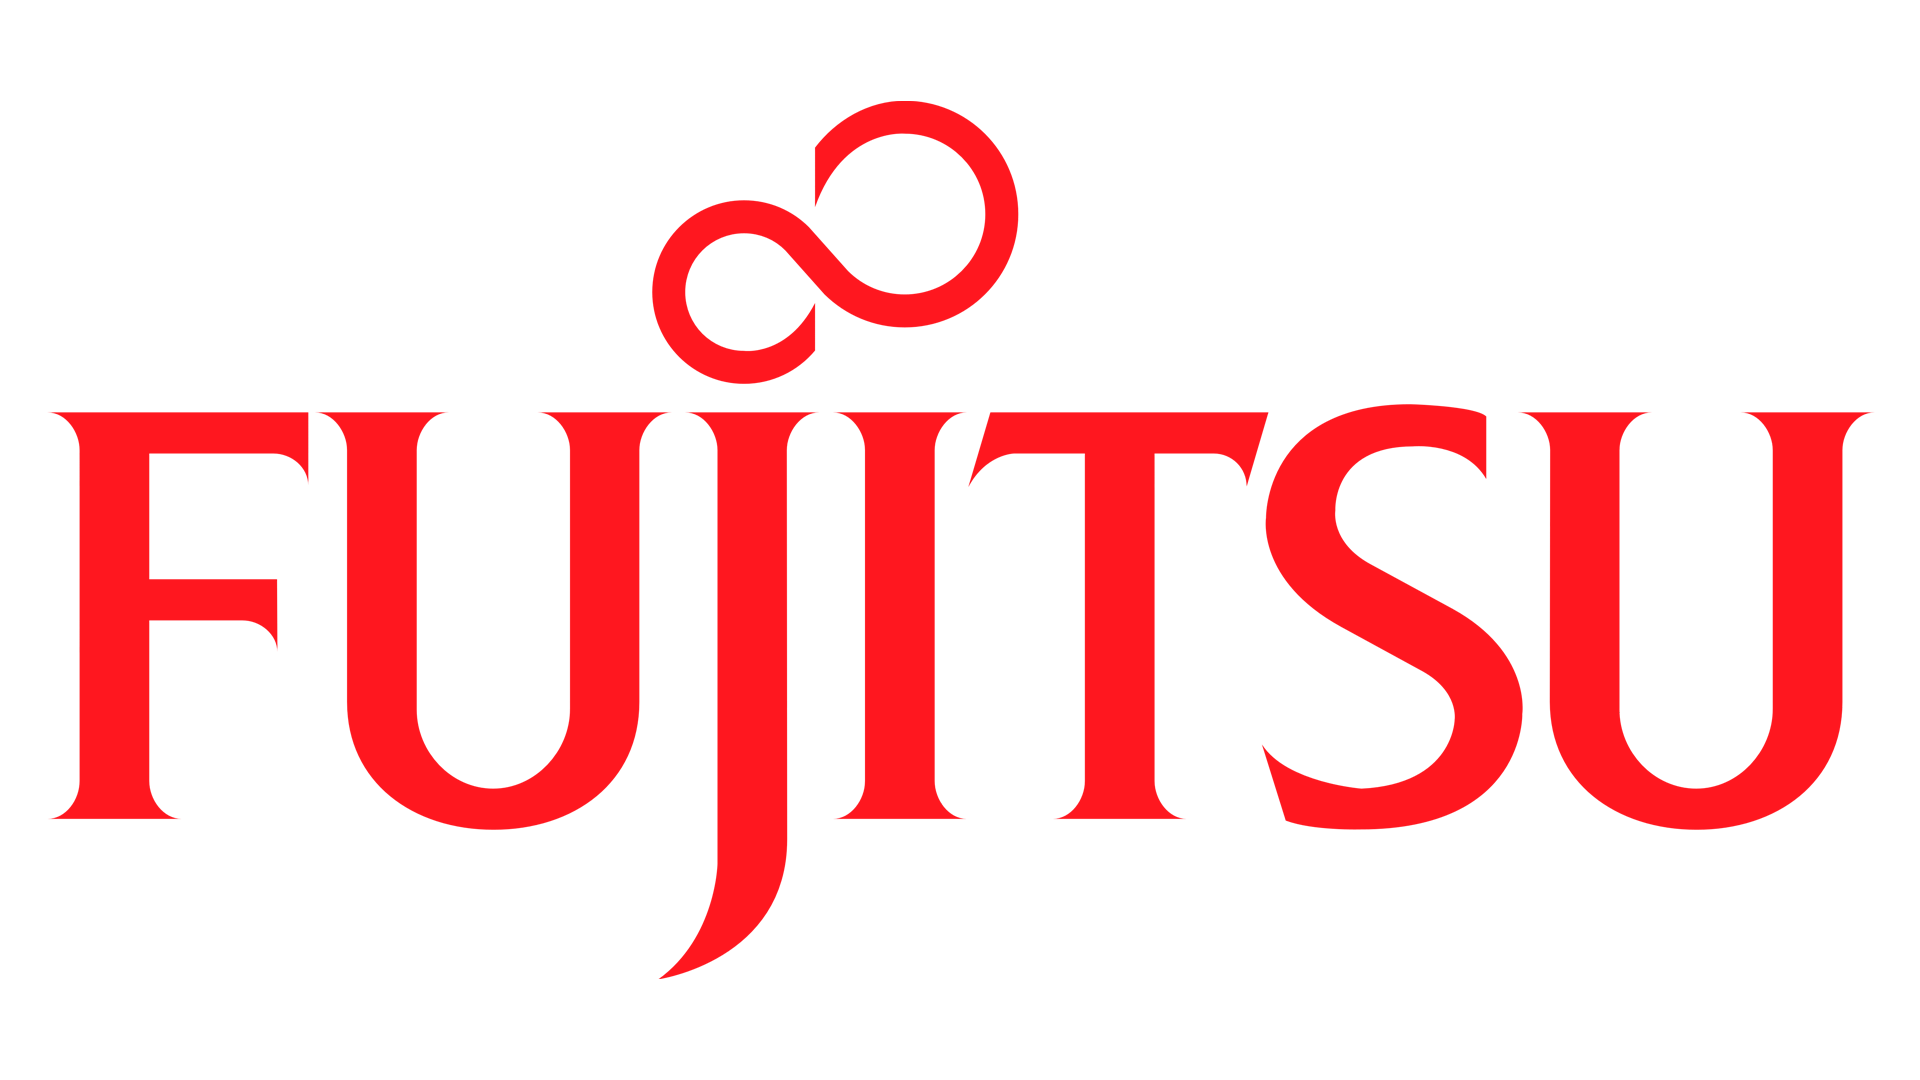 Fujitsu-Logo